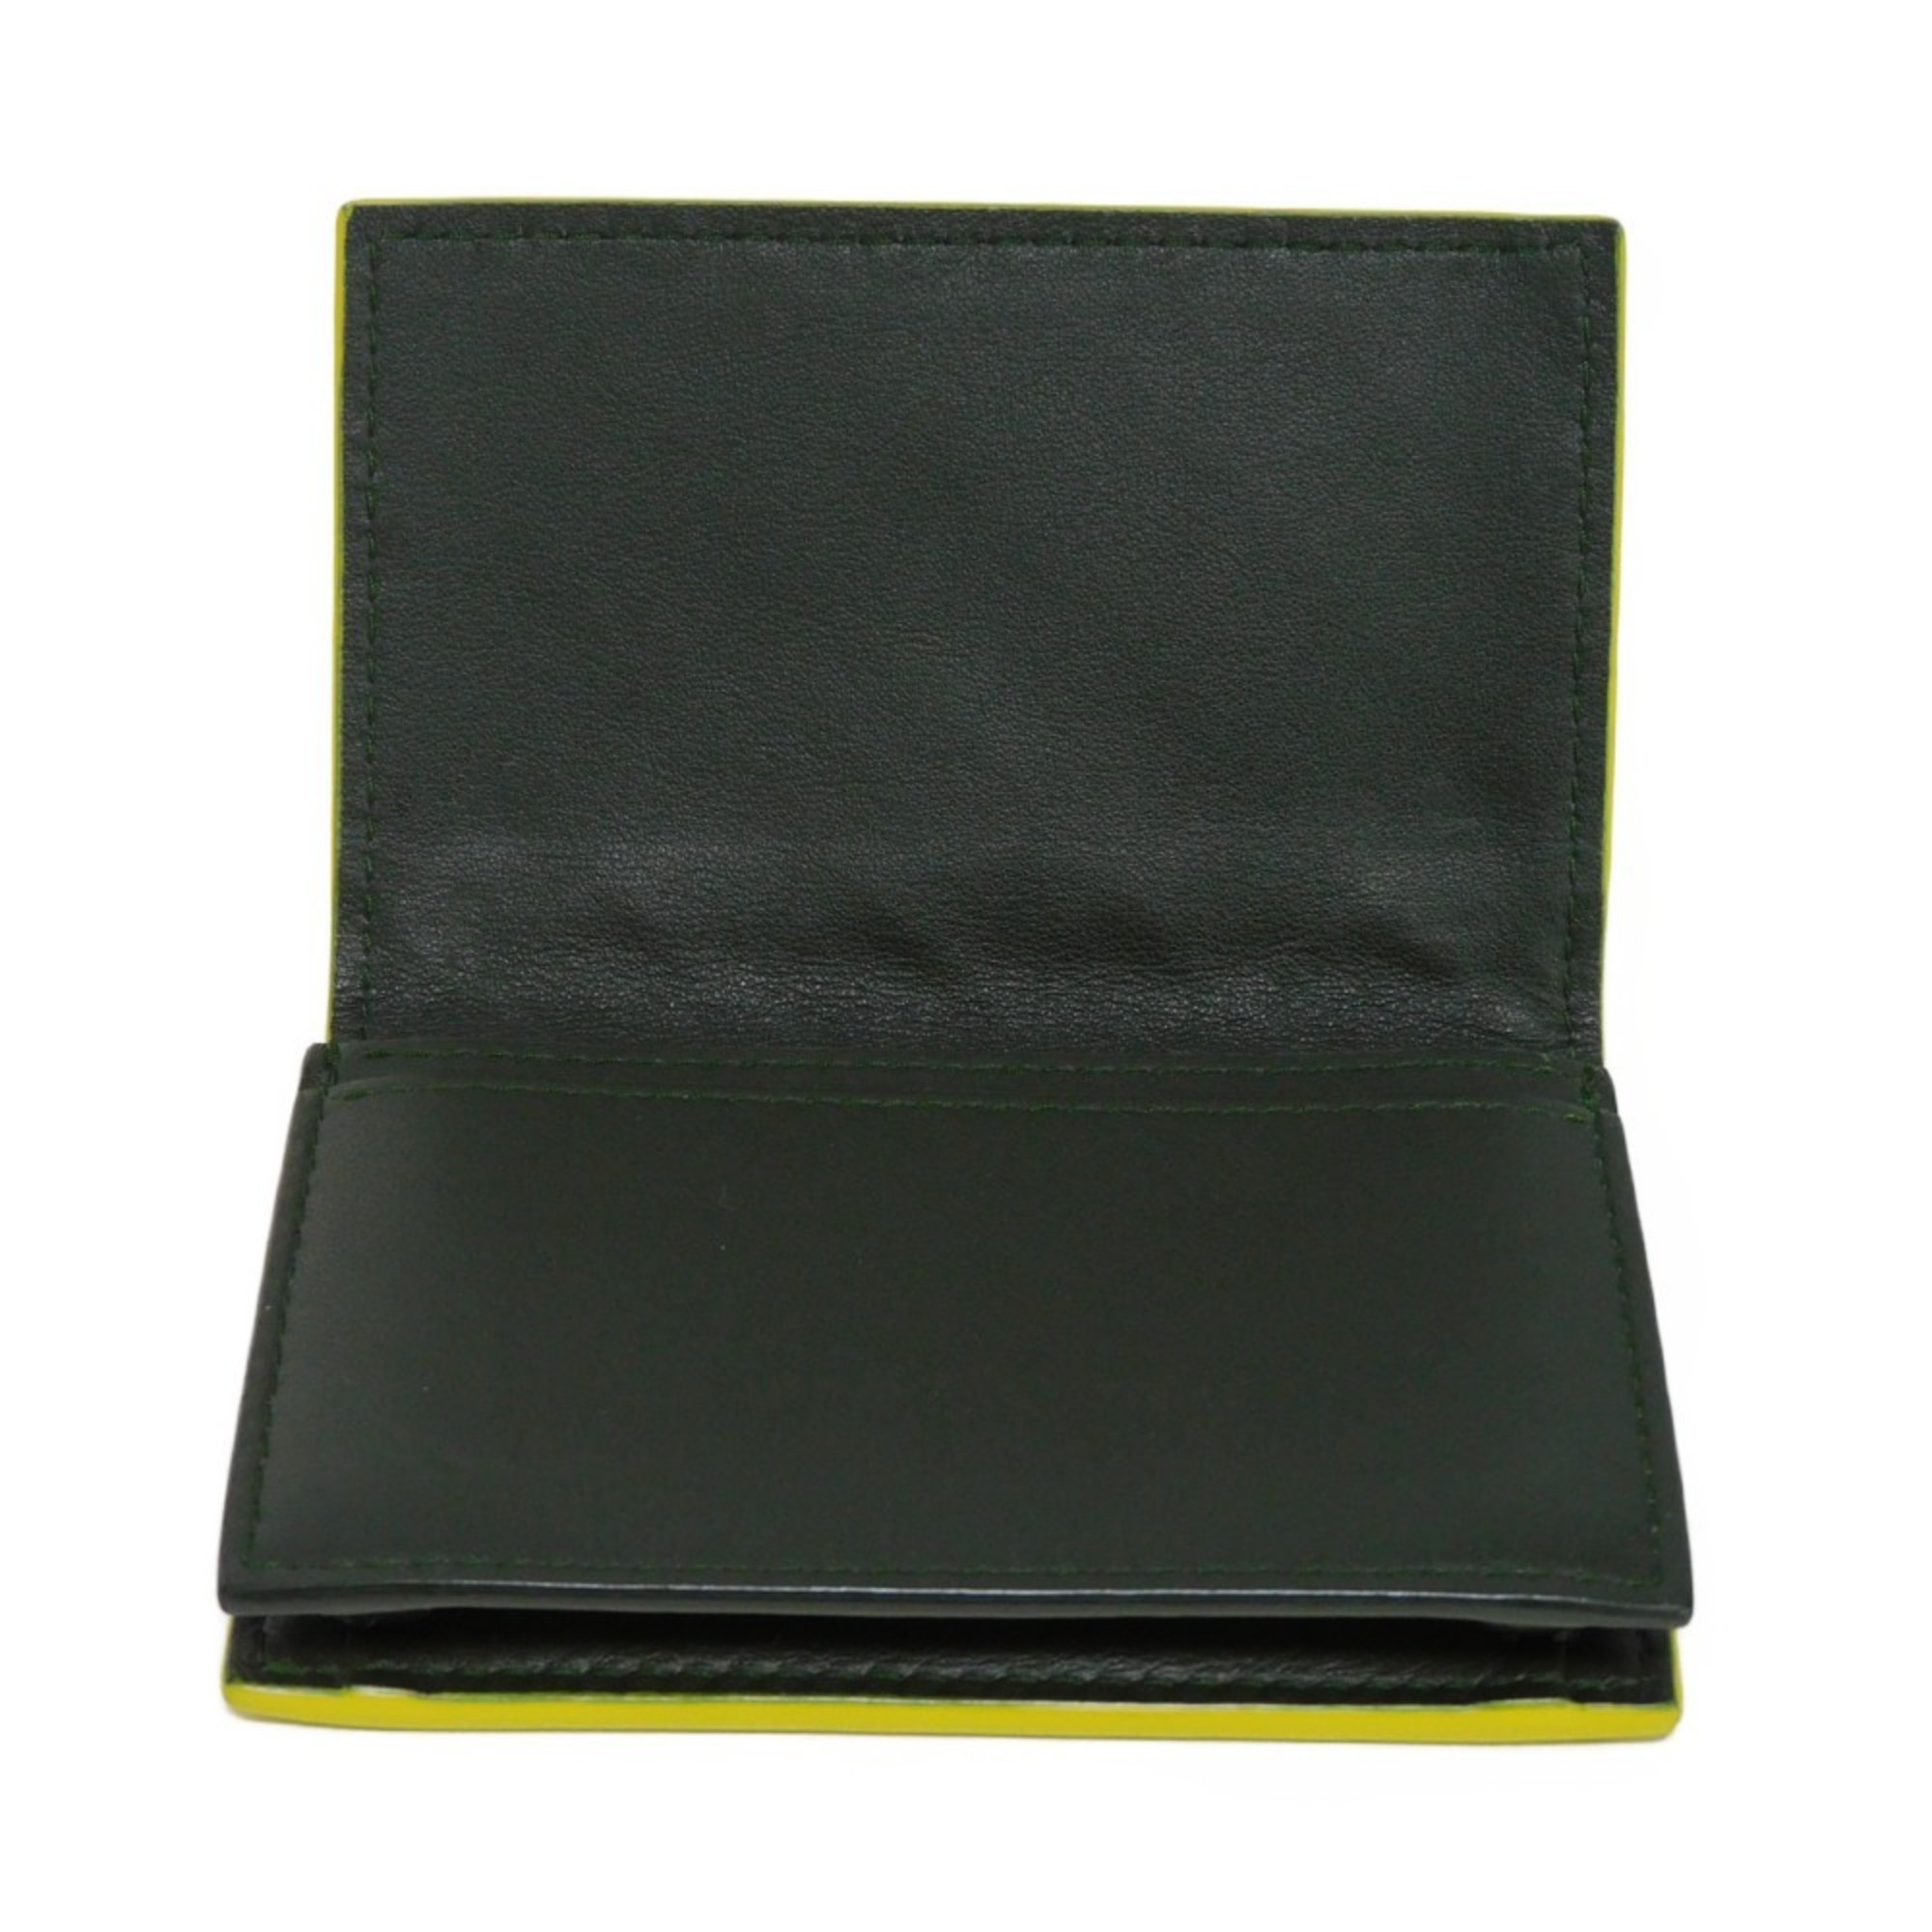 Bottega Veneta BOTTEGAVENETA Card Case Holder Lime Yellow Khaki Bicolor Maxi Intrecciato Calfskin 605720 Men's